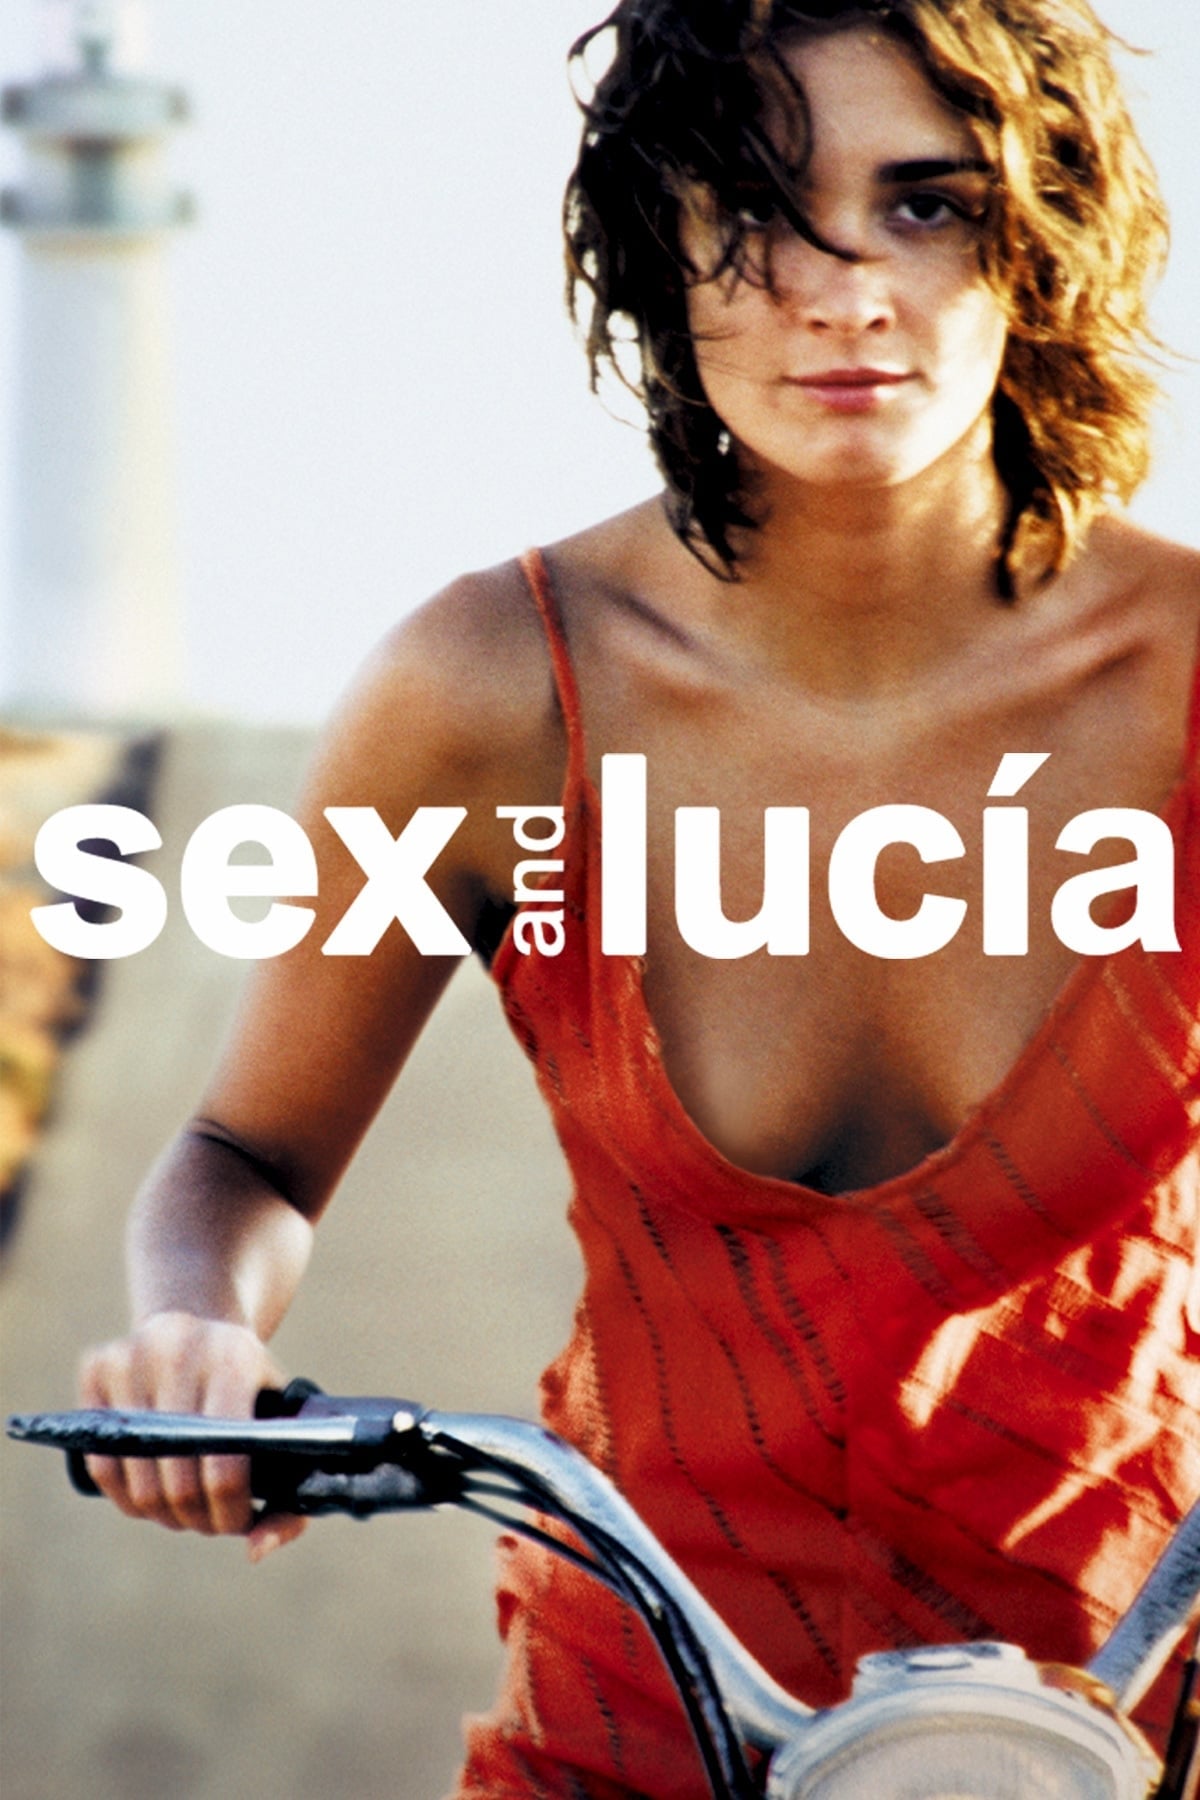 Lucia Türkçe Erotik Film izle